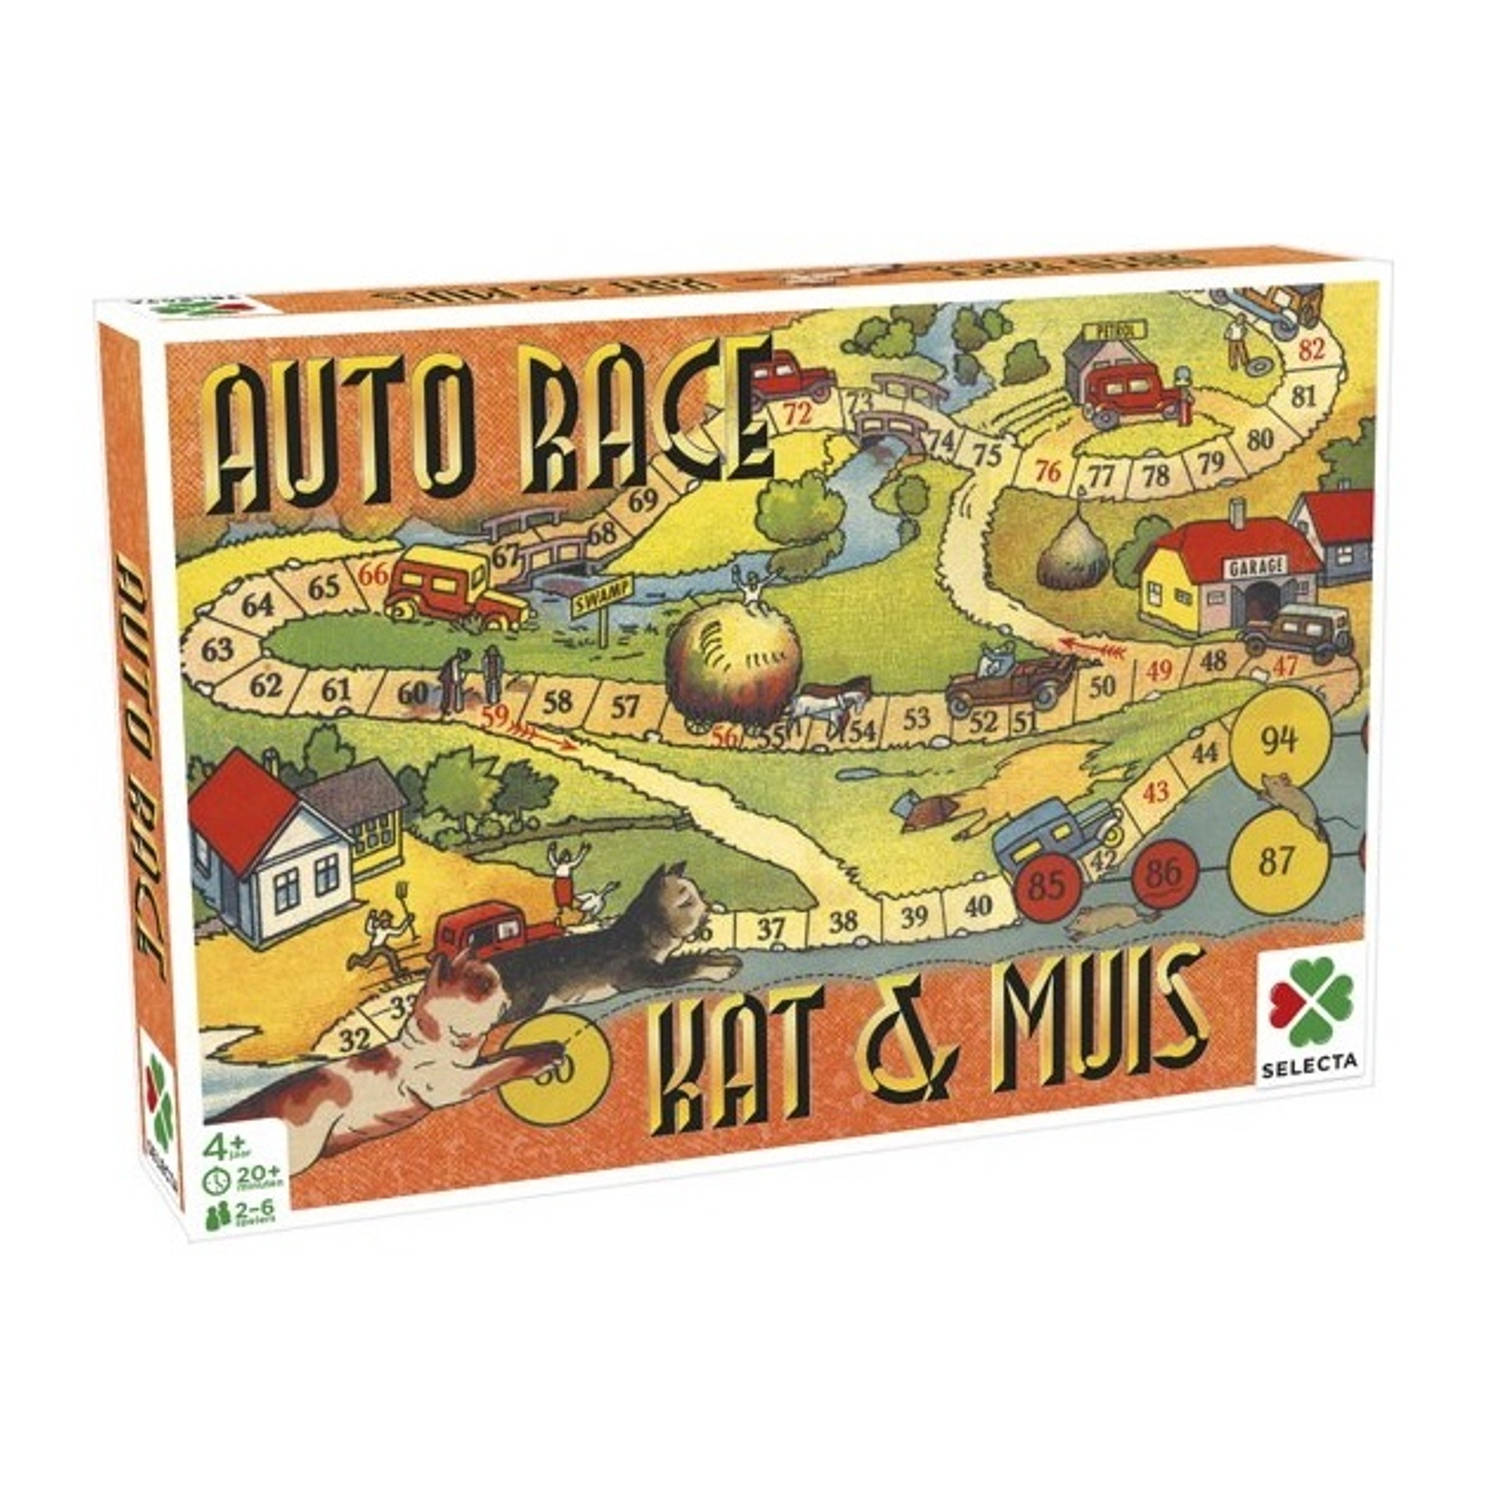 Selecta gezelschapsspel Spellen van toen: Auto Race-Kat & Muis